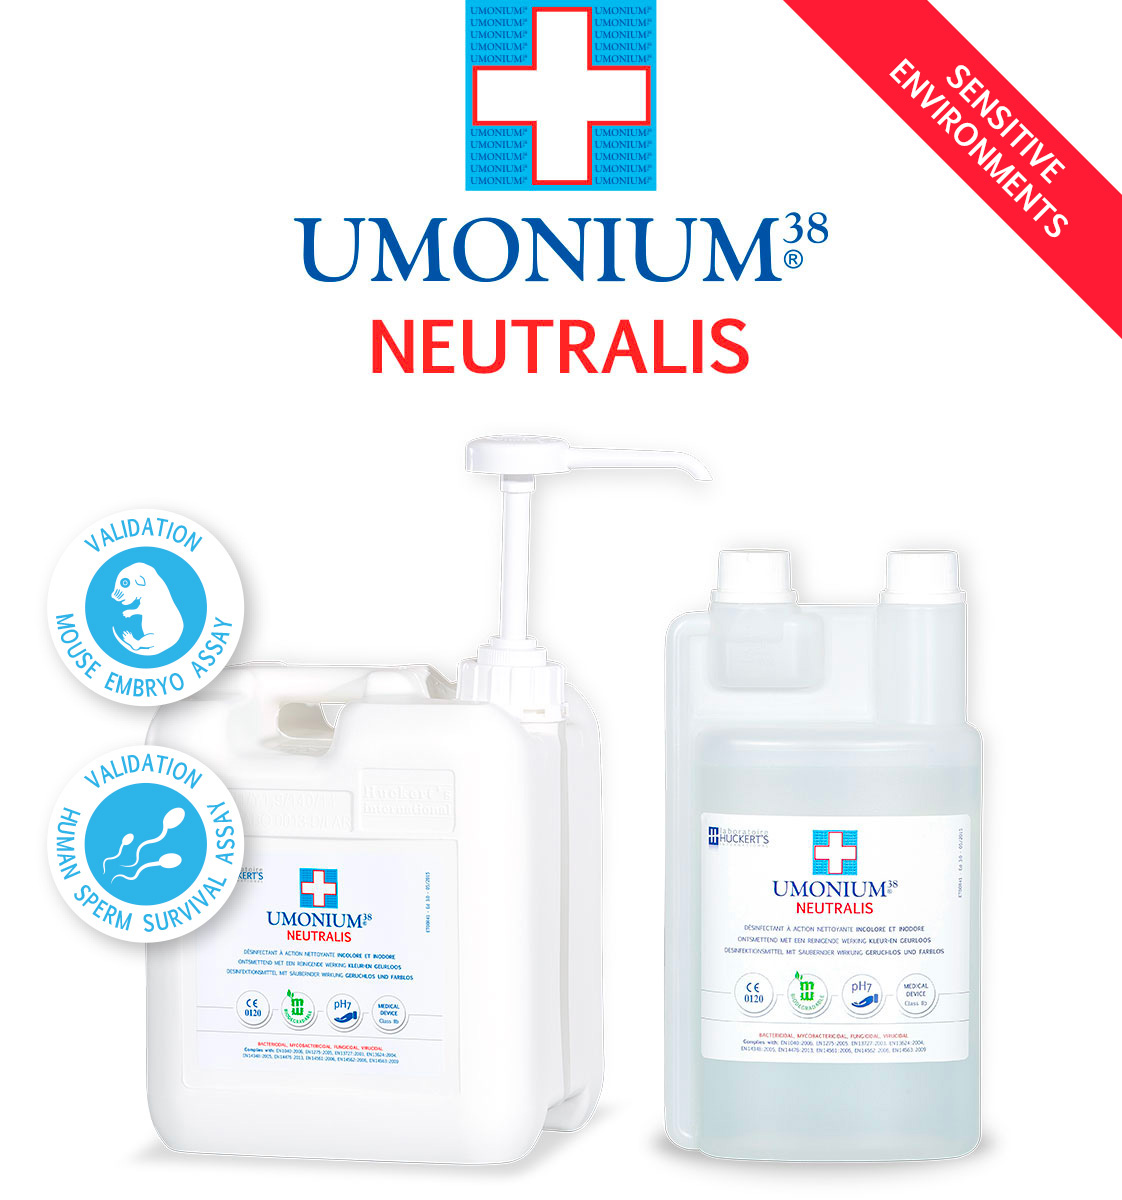 Umonium 38® Neutralis 